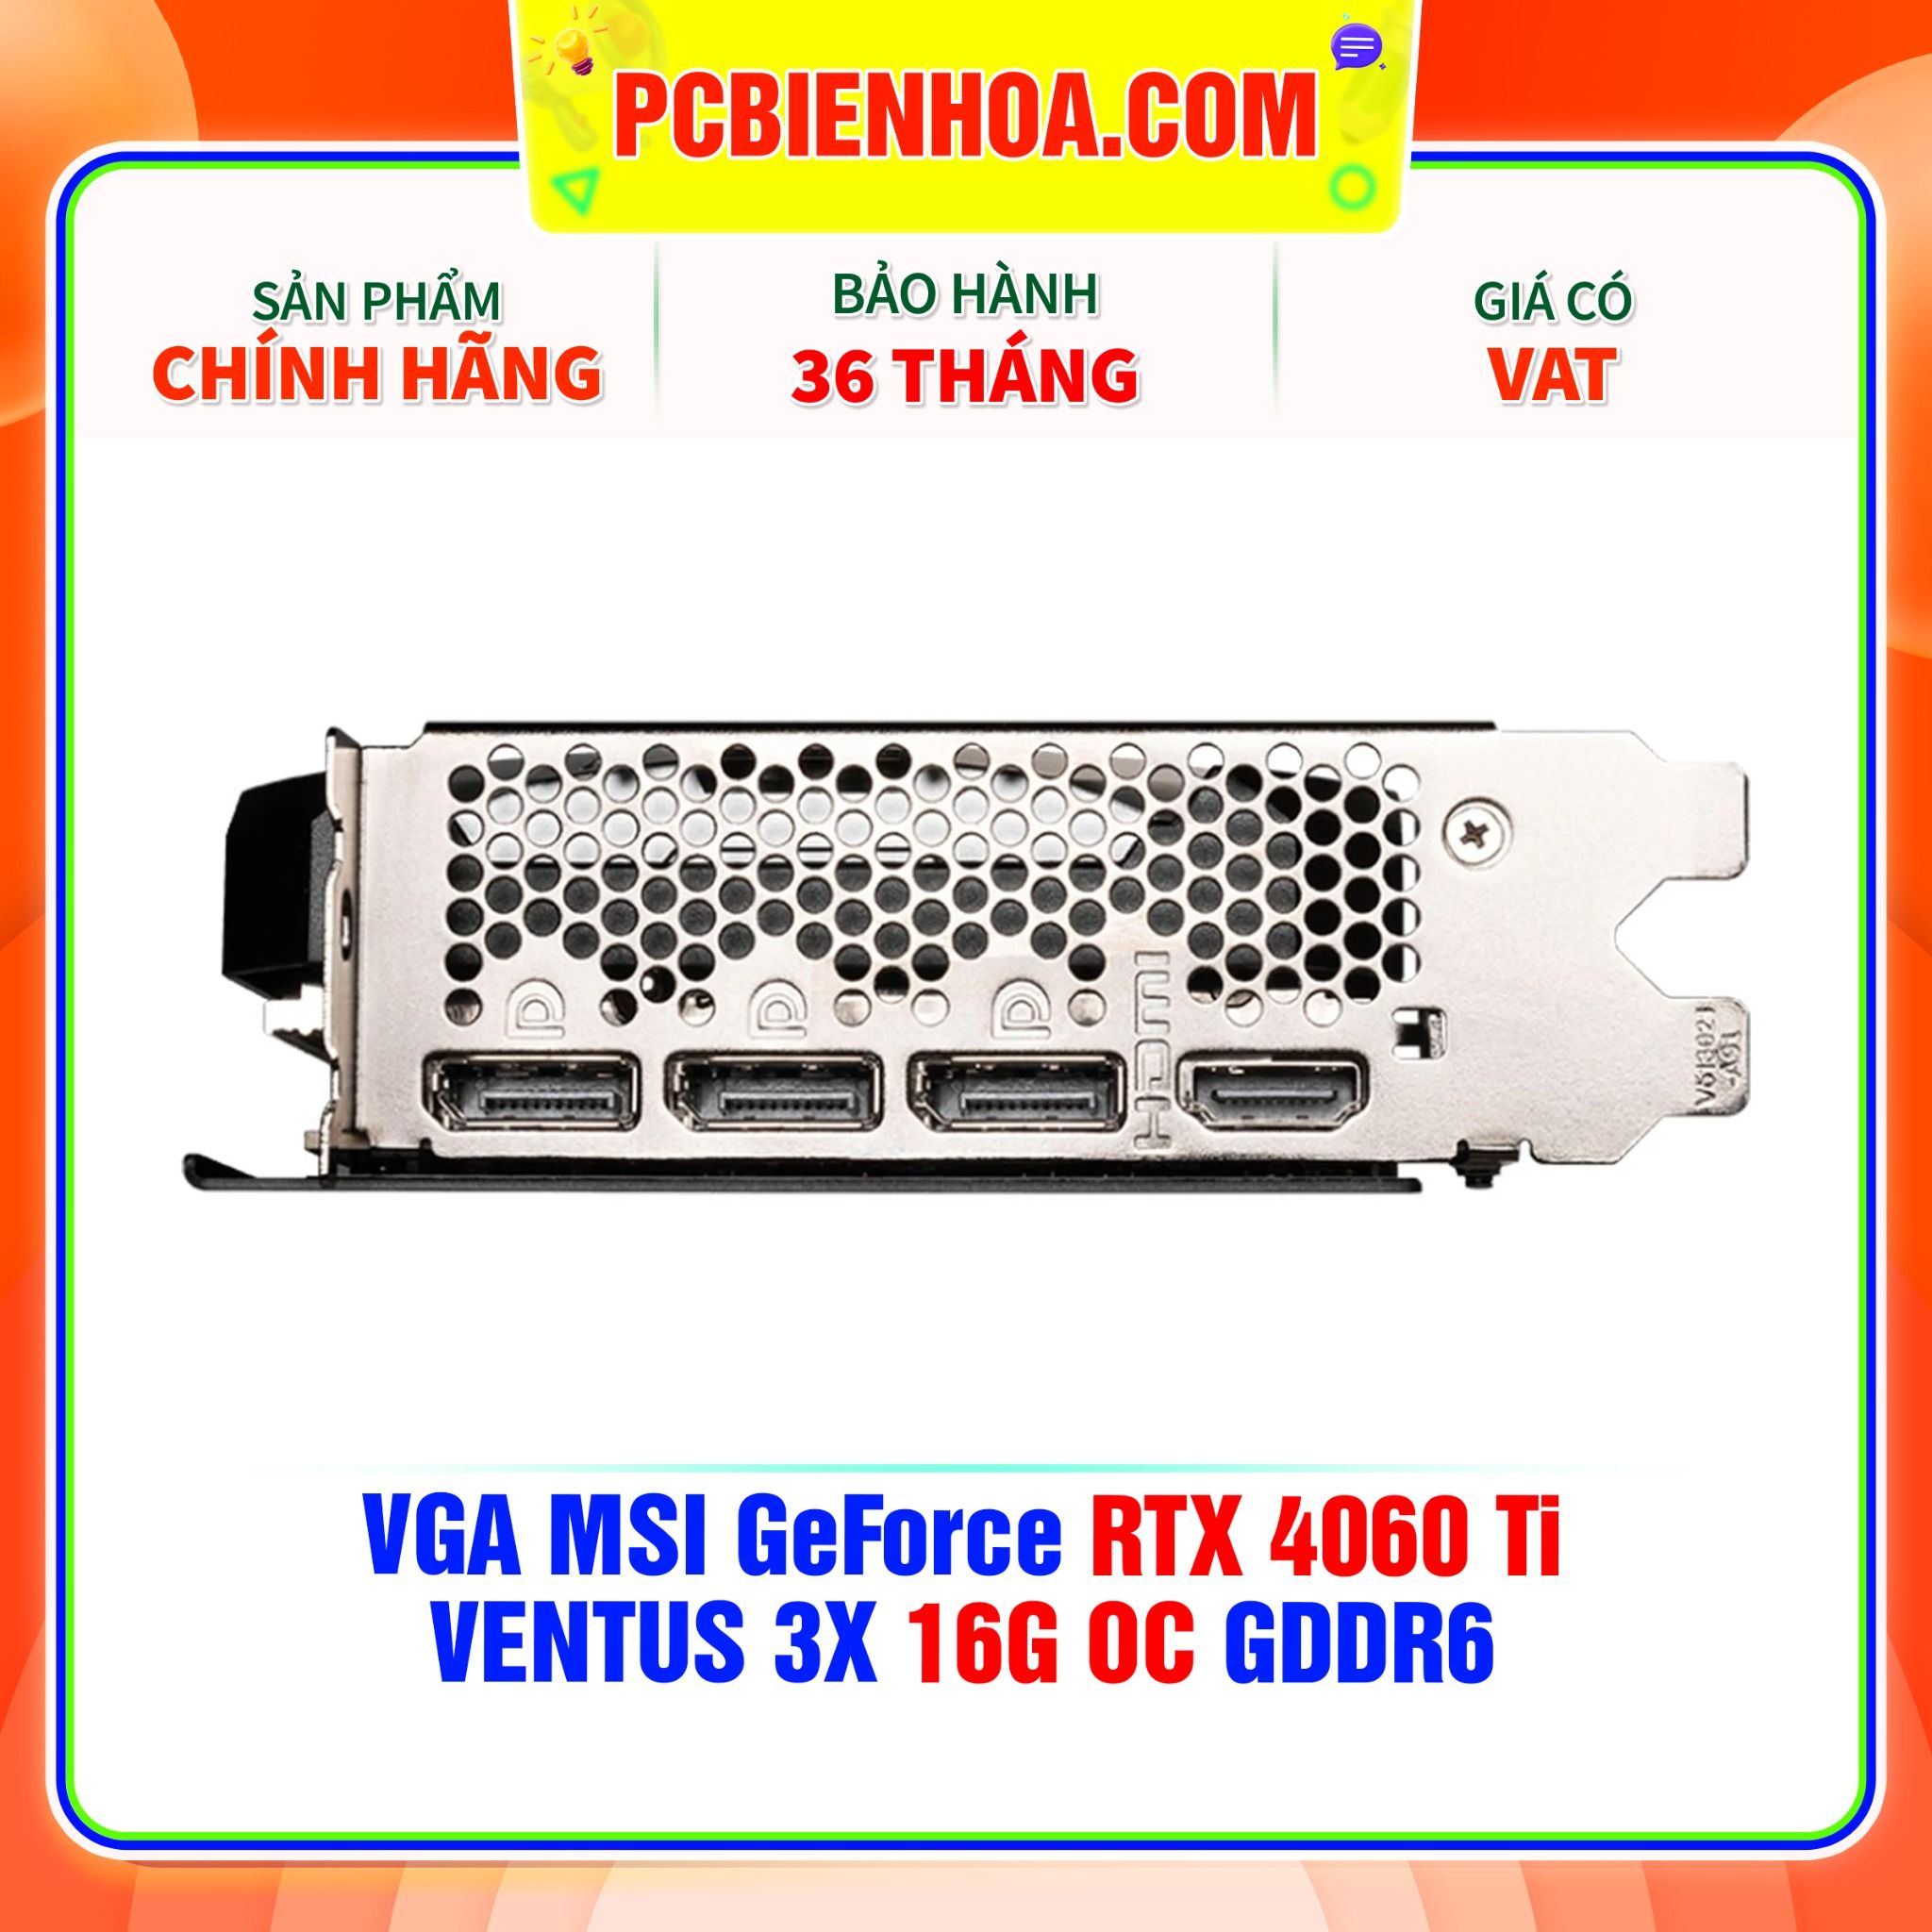  VGA MSI GeForce RTX 4060 Ti VENTUS 3X 16G OC GDDR6 